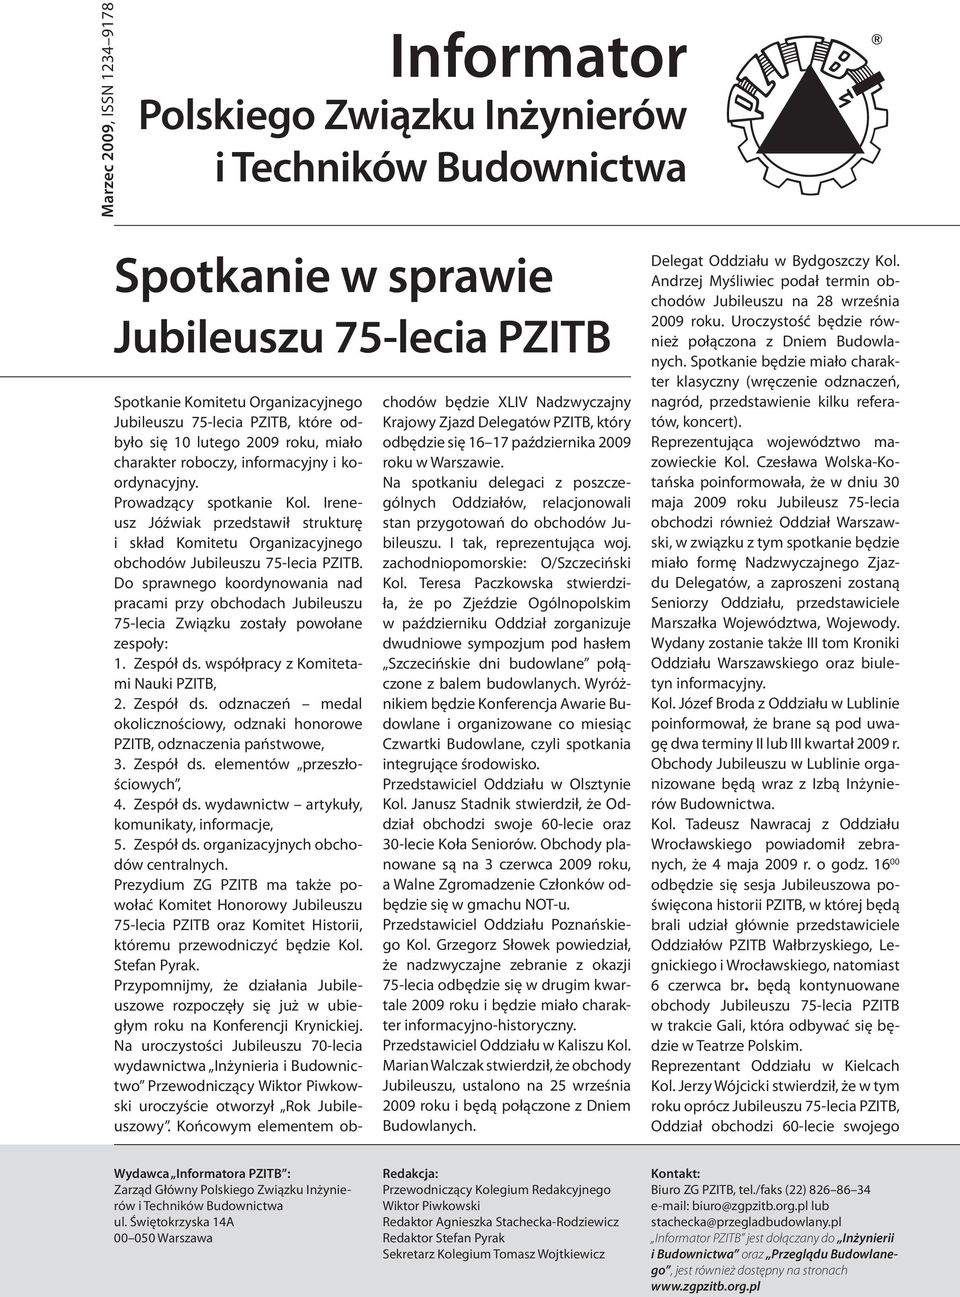 Ireneusz Jóźwiak przedstawił strukturę i skład Komitetu Organizacyjnego obchodów Jubileuszu 75-lecia PZITB.